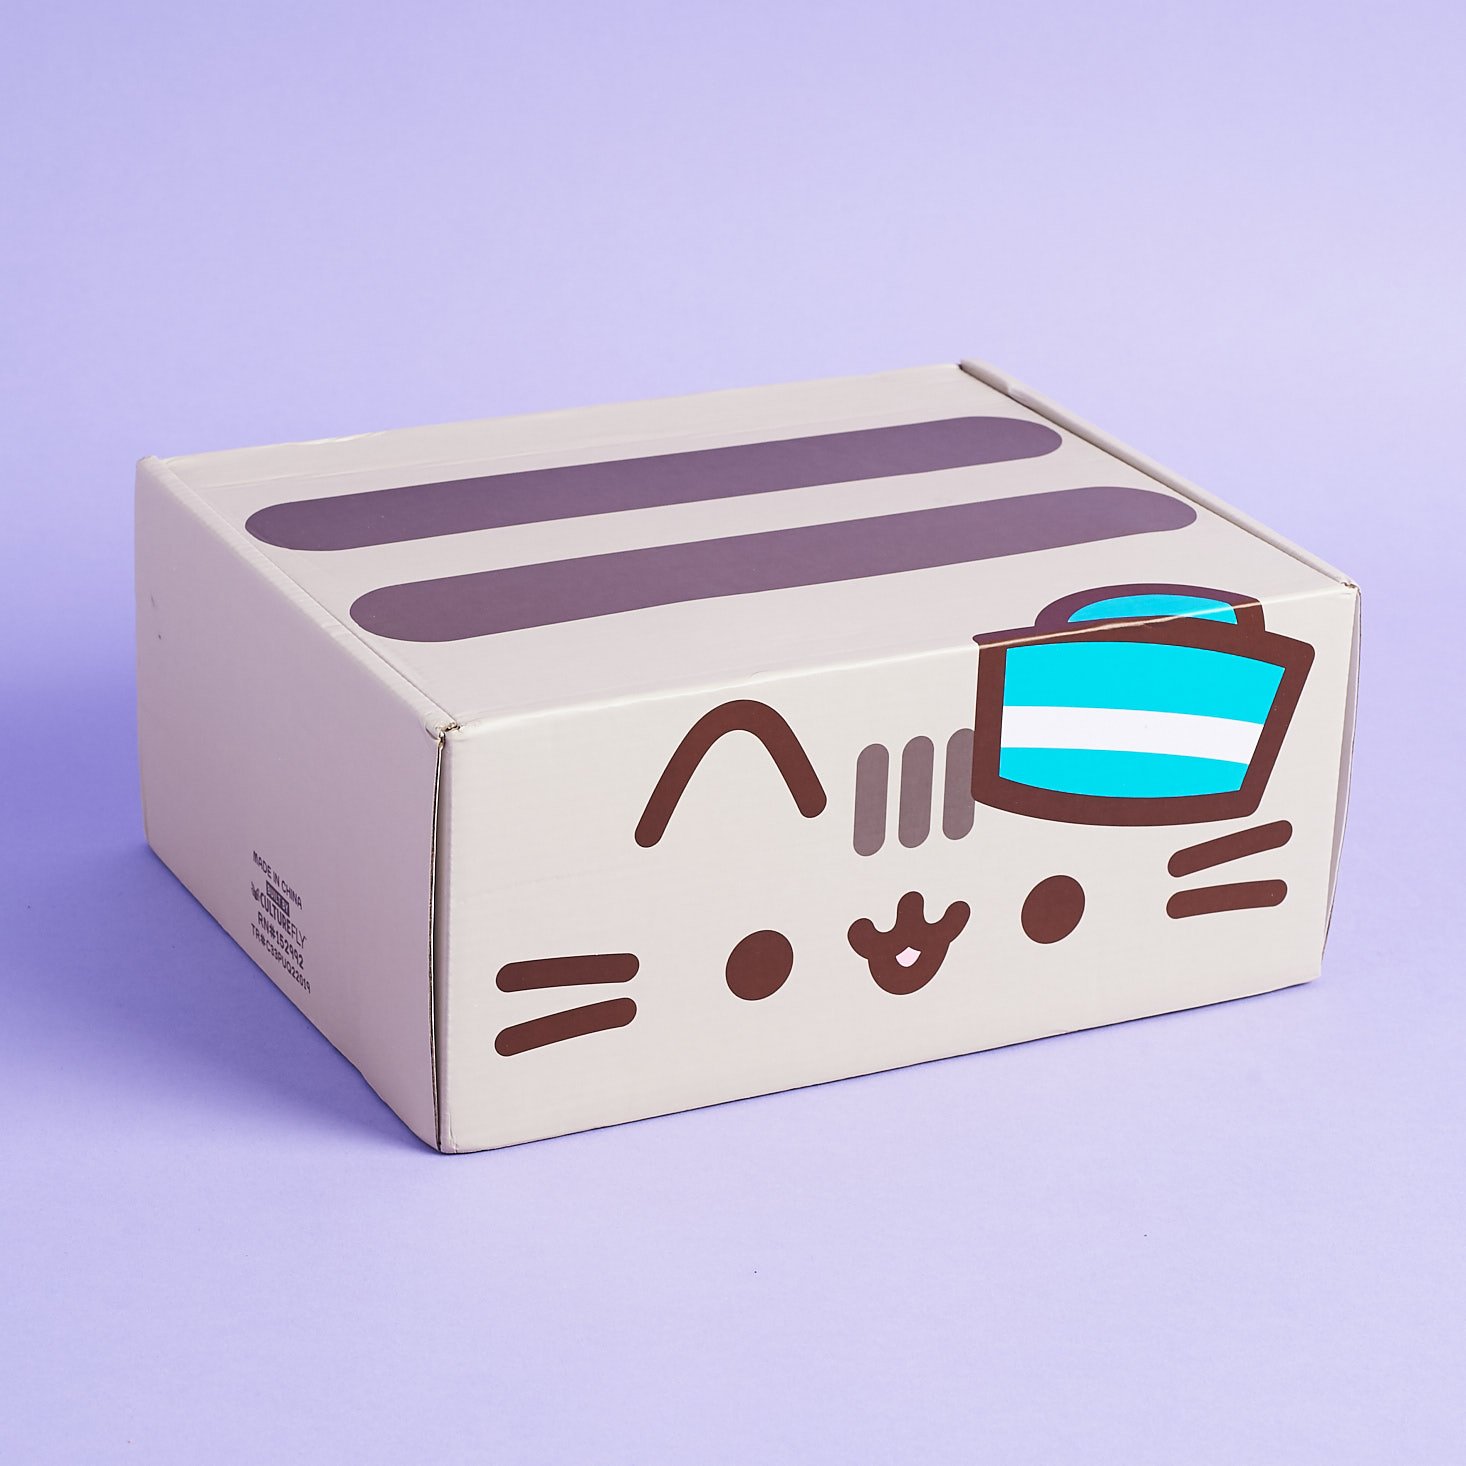 Pusheen Box, JoJo Siwa Box + More – CultureFly Boxes Shipping Updates